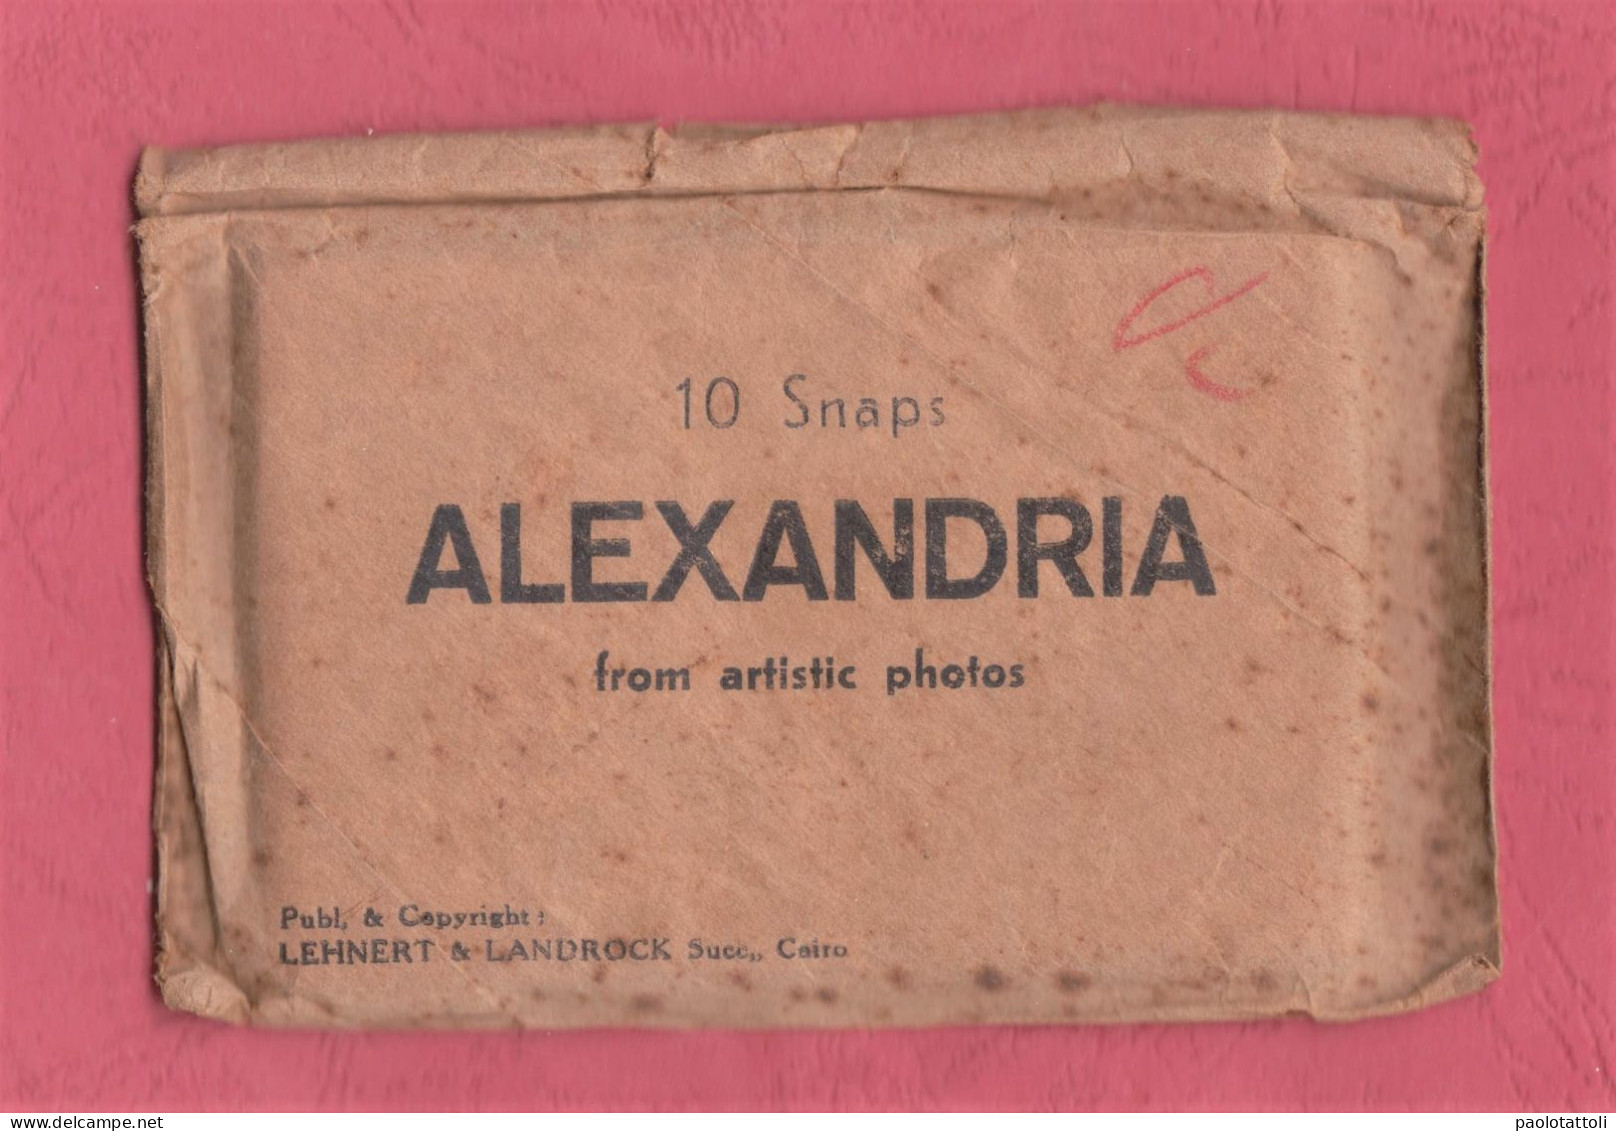 Egypt. Alexandria. 10 Snap From Artistic Photos. Publ. & Copyright Lehnert & Landrock. 92x 60mm. - Obj. 'Remember Of'